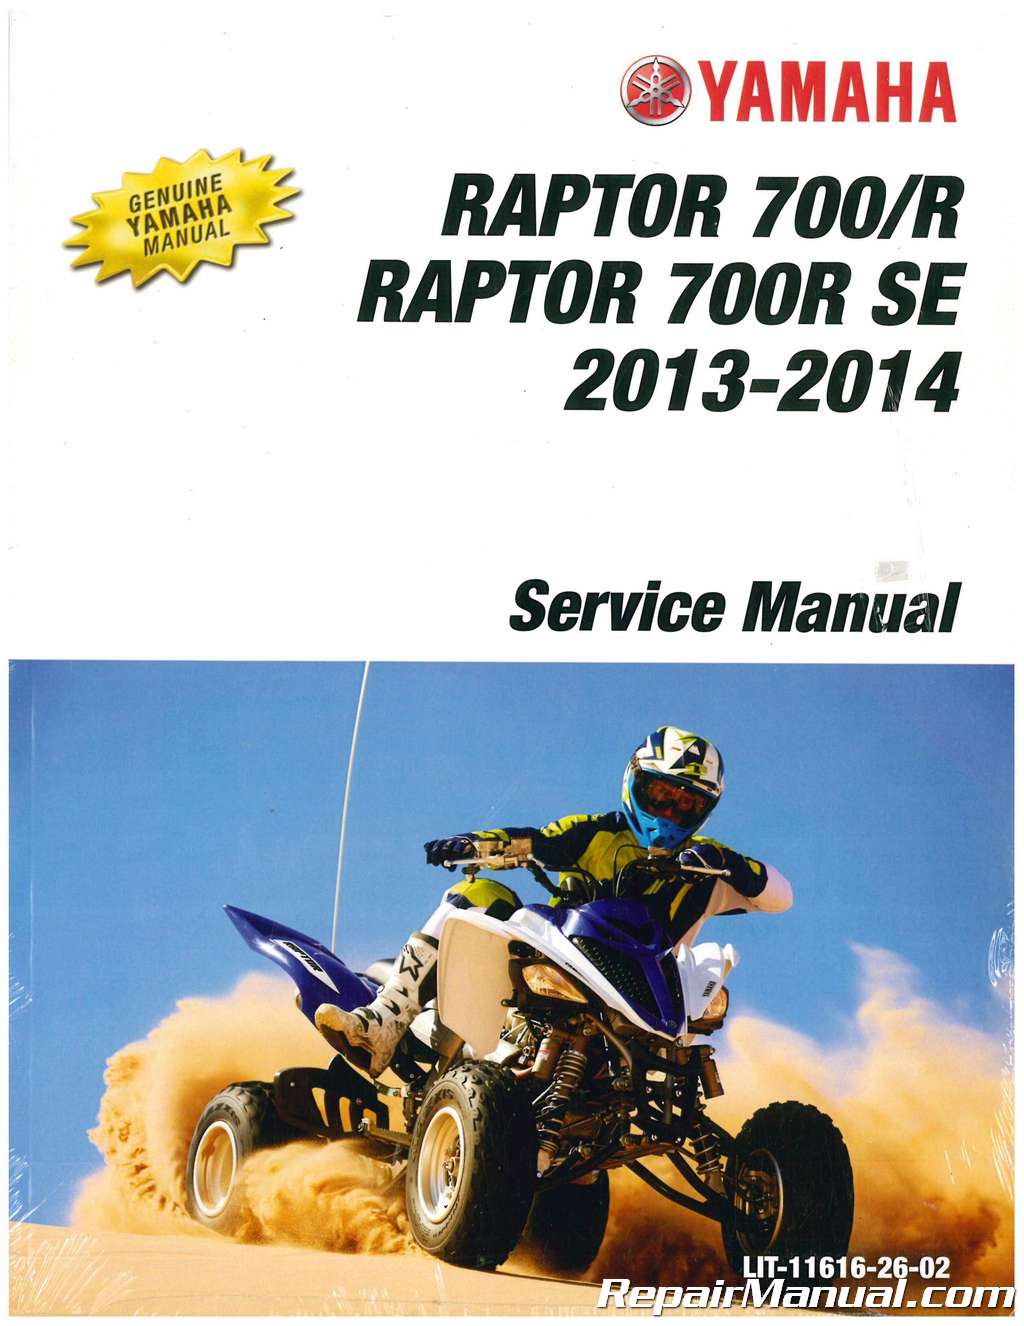 Yamaha Raptor 700 Service Repair Manual 